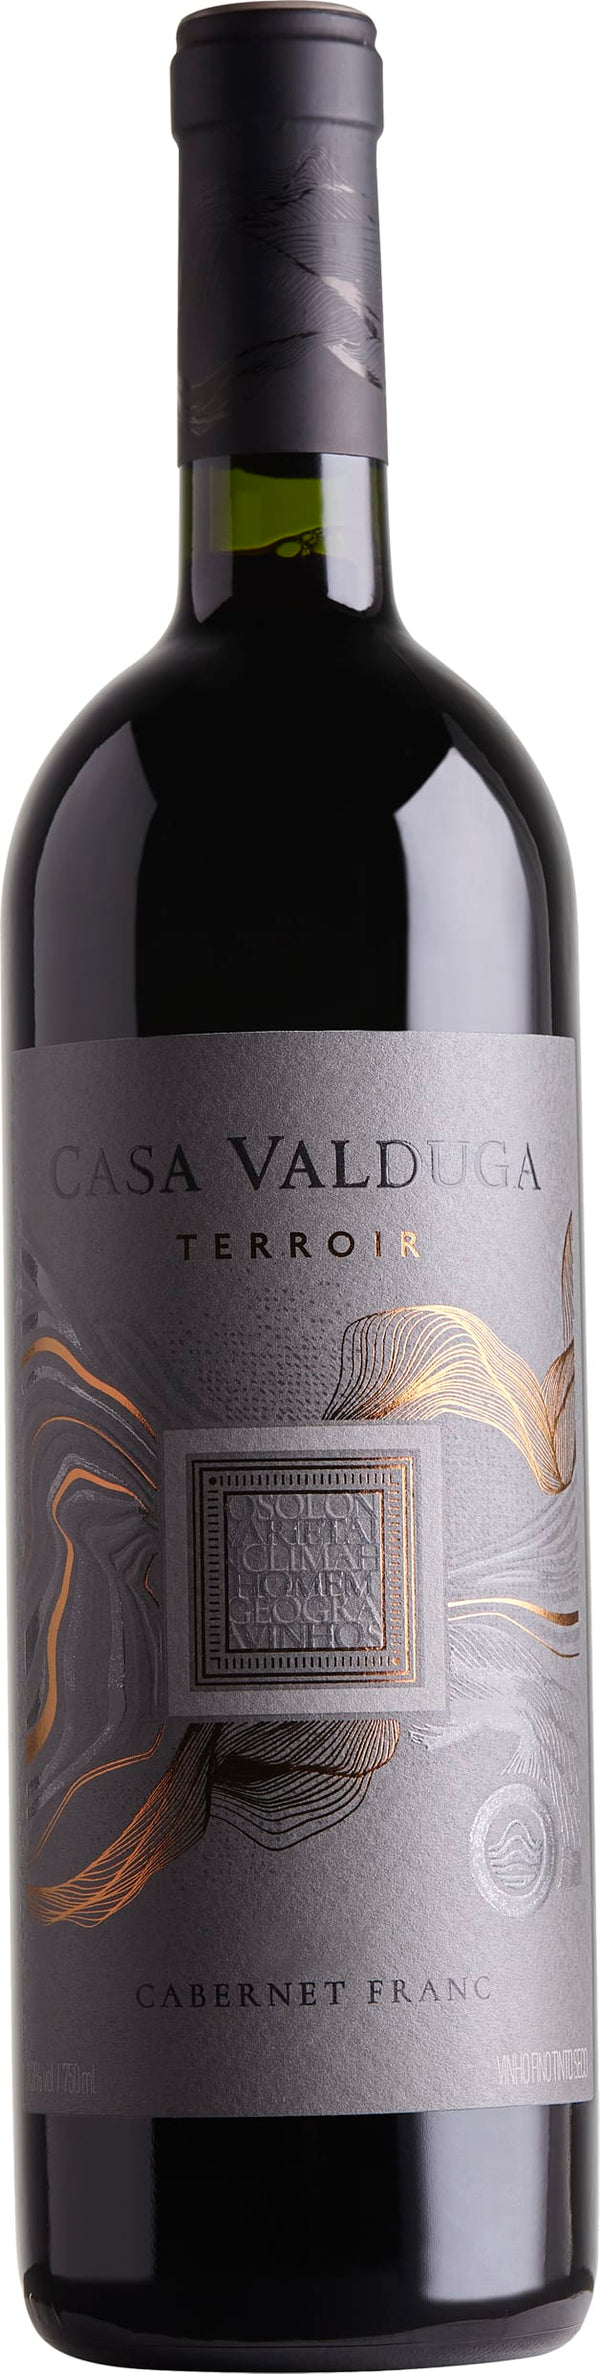 Casa Valduga Terrior Cabernet Franc 2019 6x75cl - Just Wines 